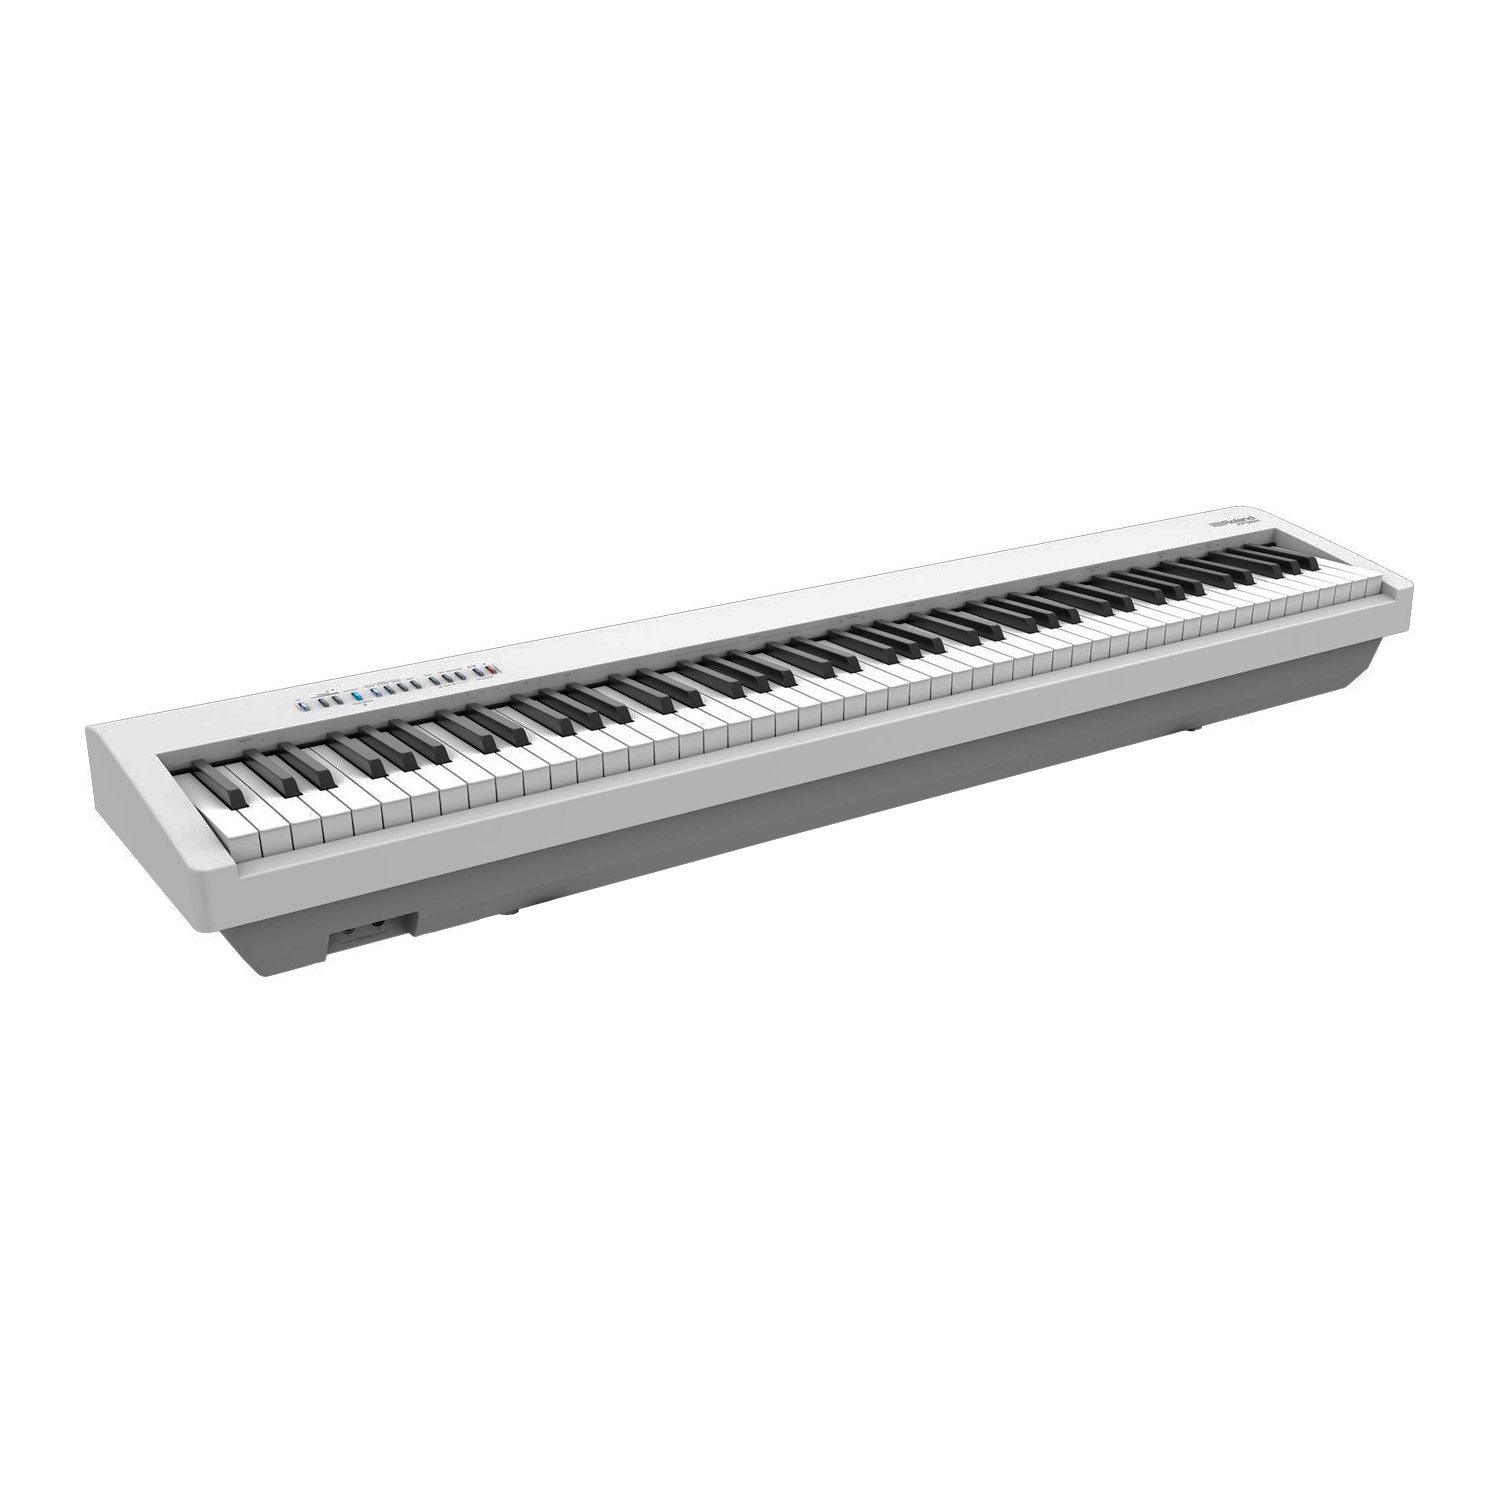 ROLAND FP-30X-WH - цифровое фортепиано, 88 кл. PHA-4 Standard, 56 тембров, 256 полиф., (цвет белый)